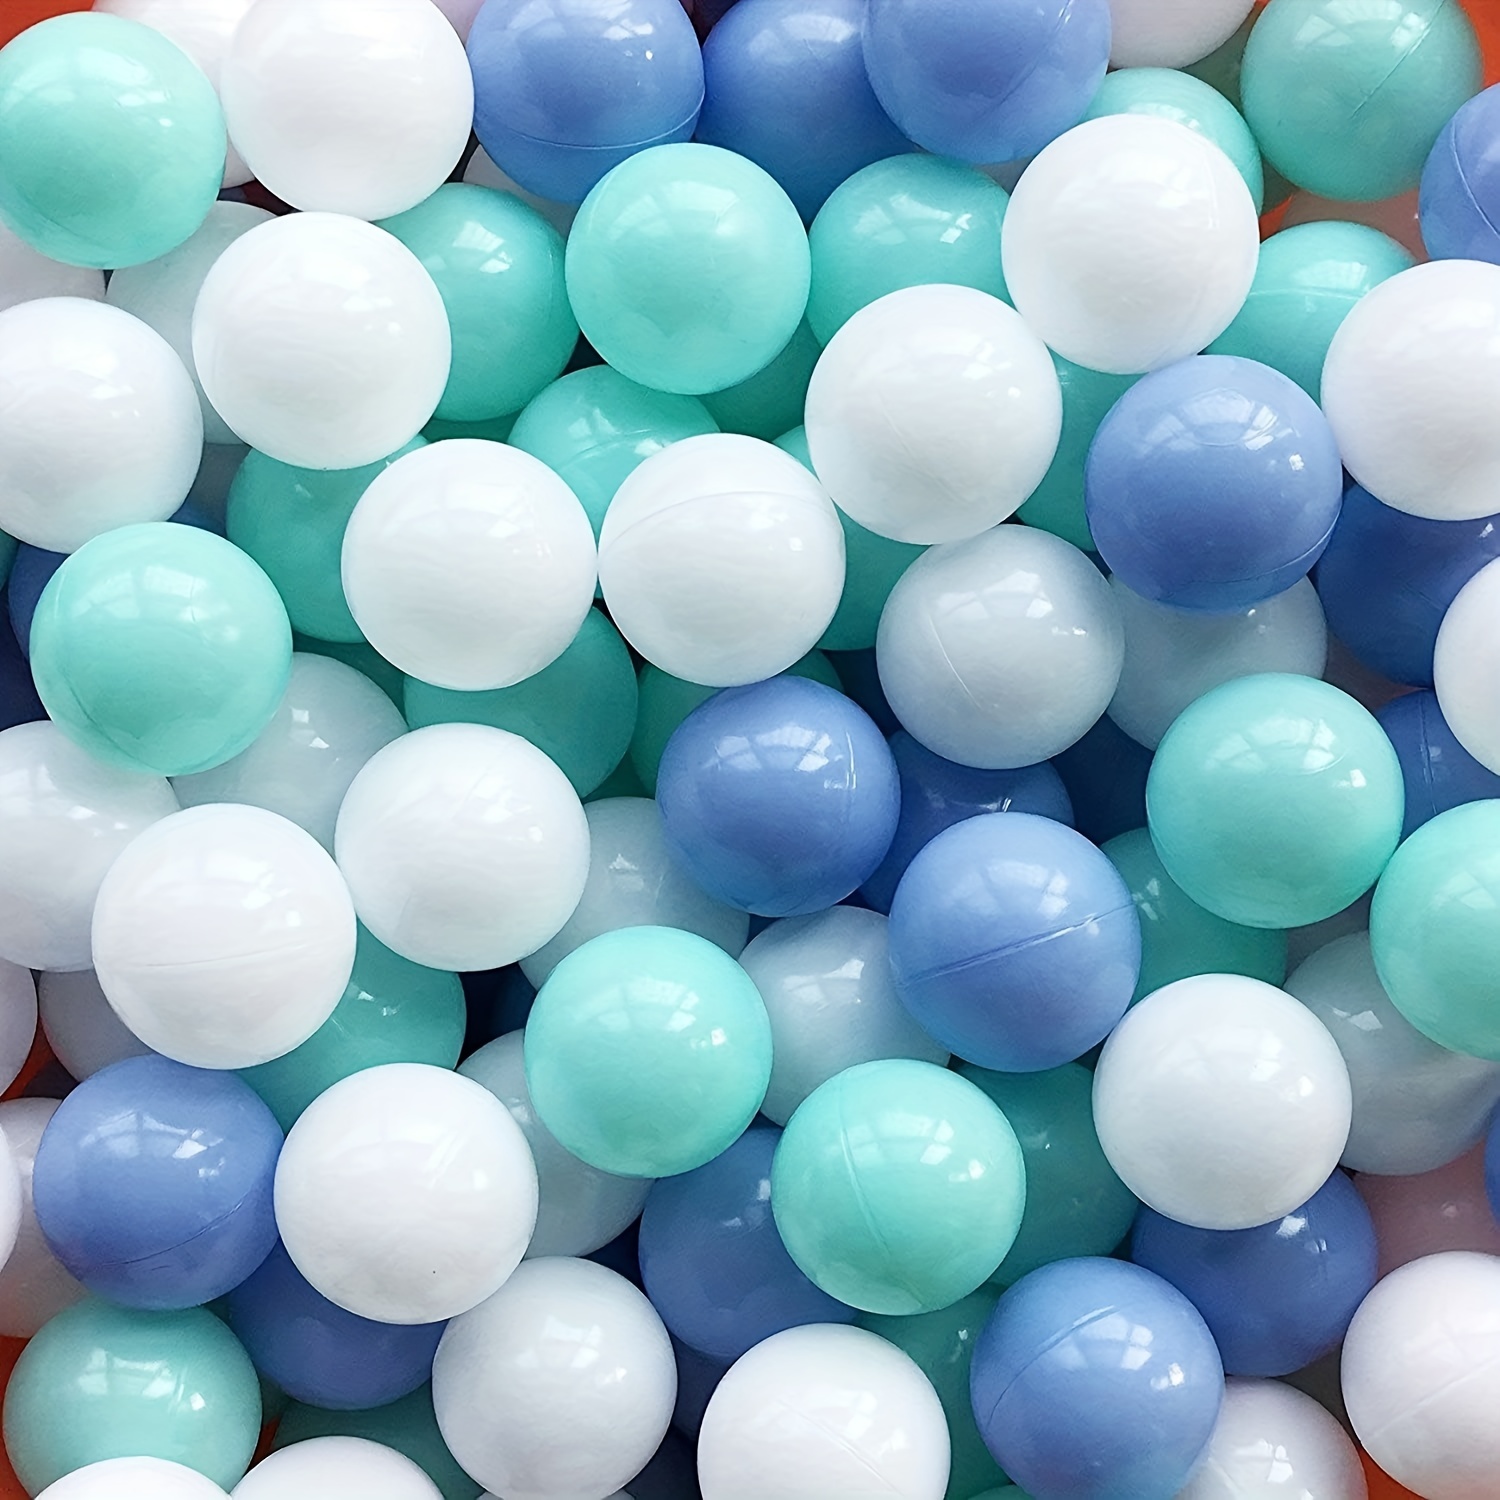 Piscina de bolas de espuma para niños pequeños, piscina de bolas redonda  suave, fácil de limpiar o instalar, regalo ideal para bebés, juegos en